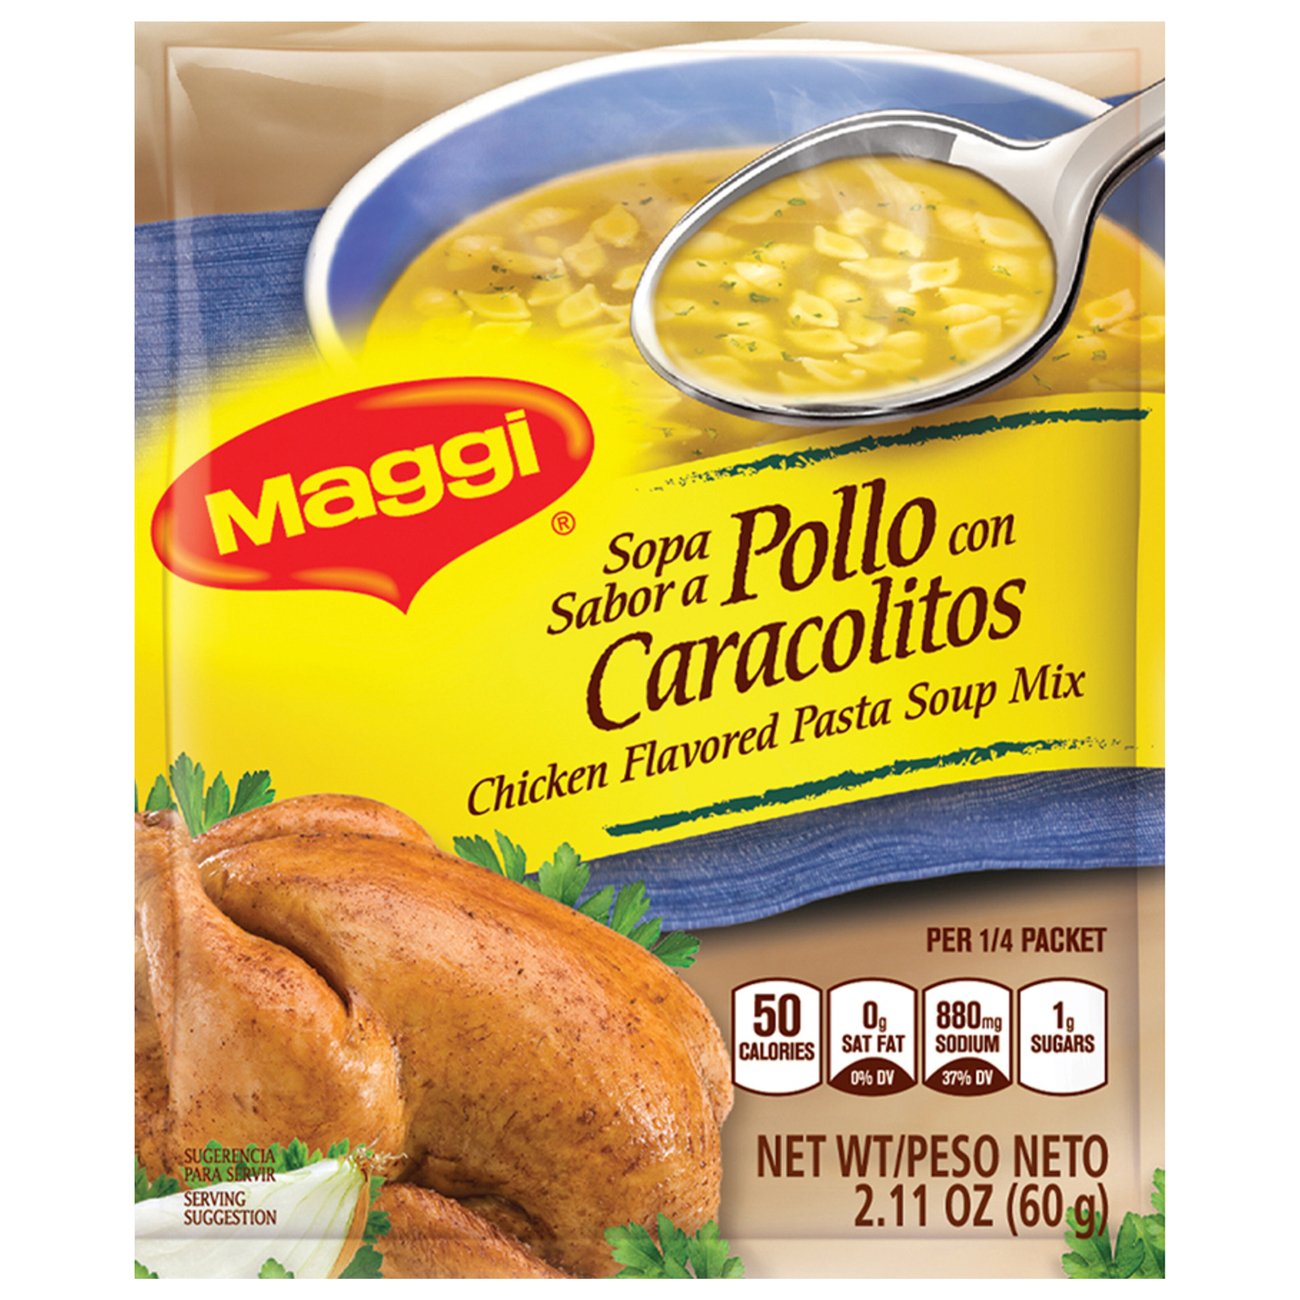 Maggi Chicken Flavored Pasta Soup Mix - Shop Soups & Chili at H-E-B